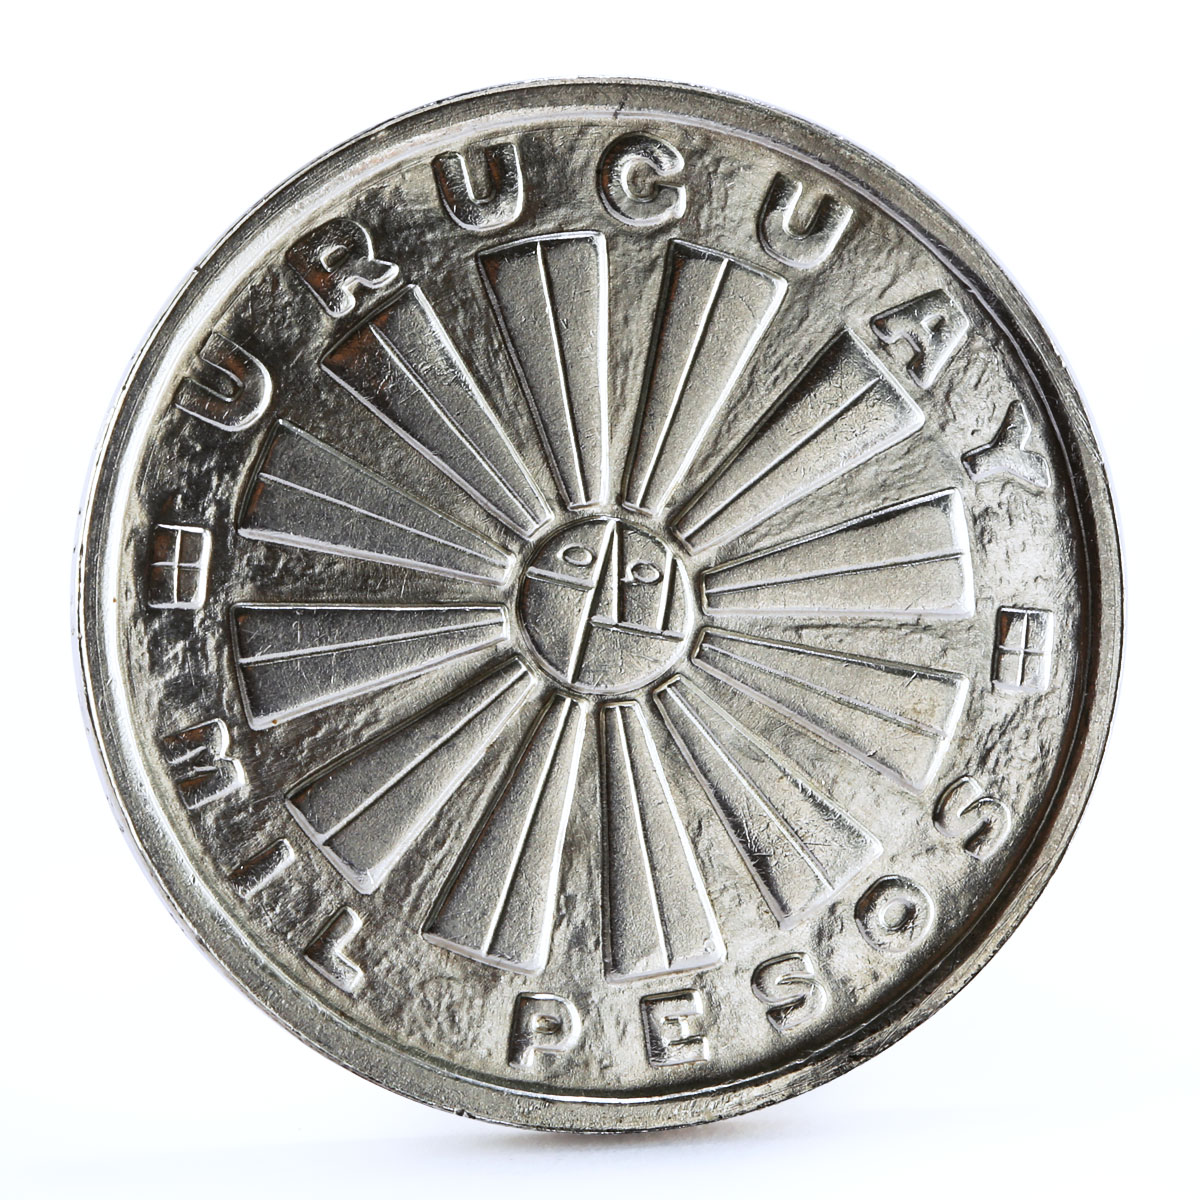 Uruguay 1000 pesos FAO Fauna Ornament silver coin 1969